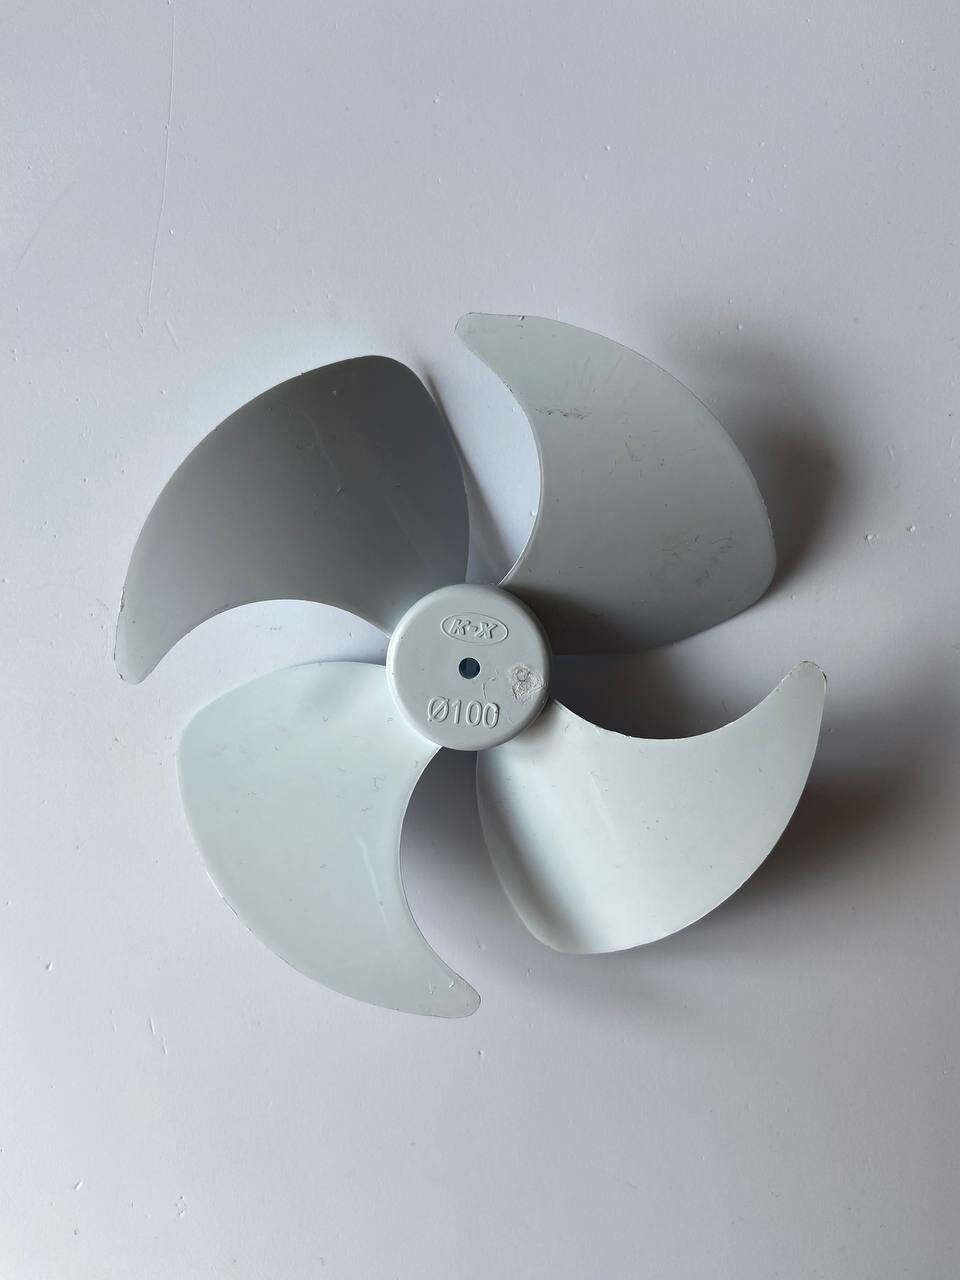 Крыльчатка вентилятора для холодильника Stinol, Indesit, Ariston 10 см